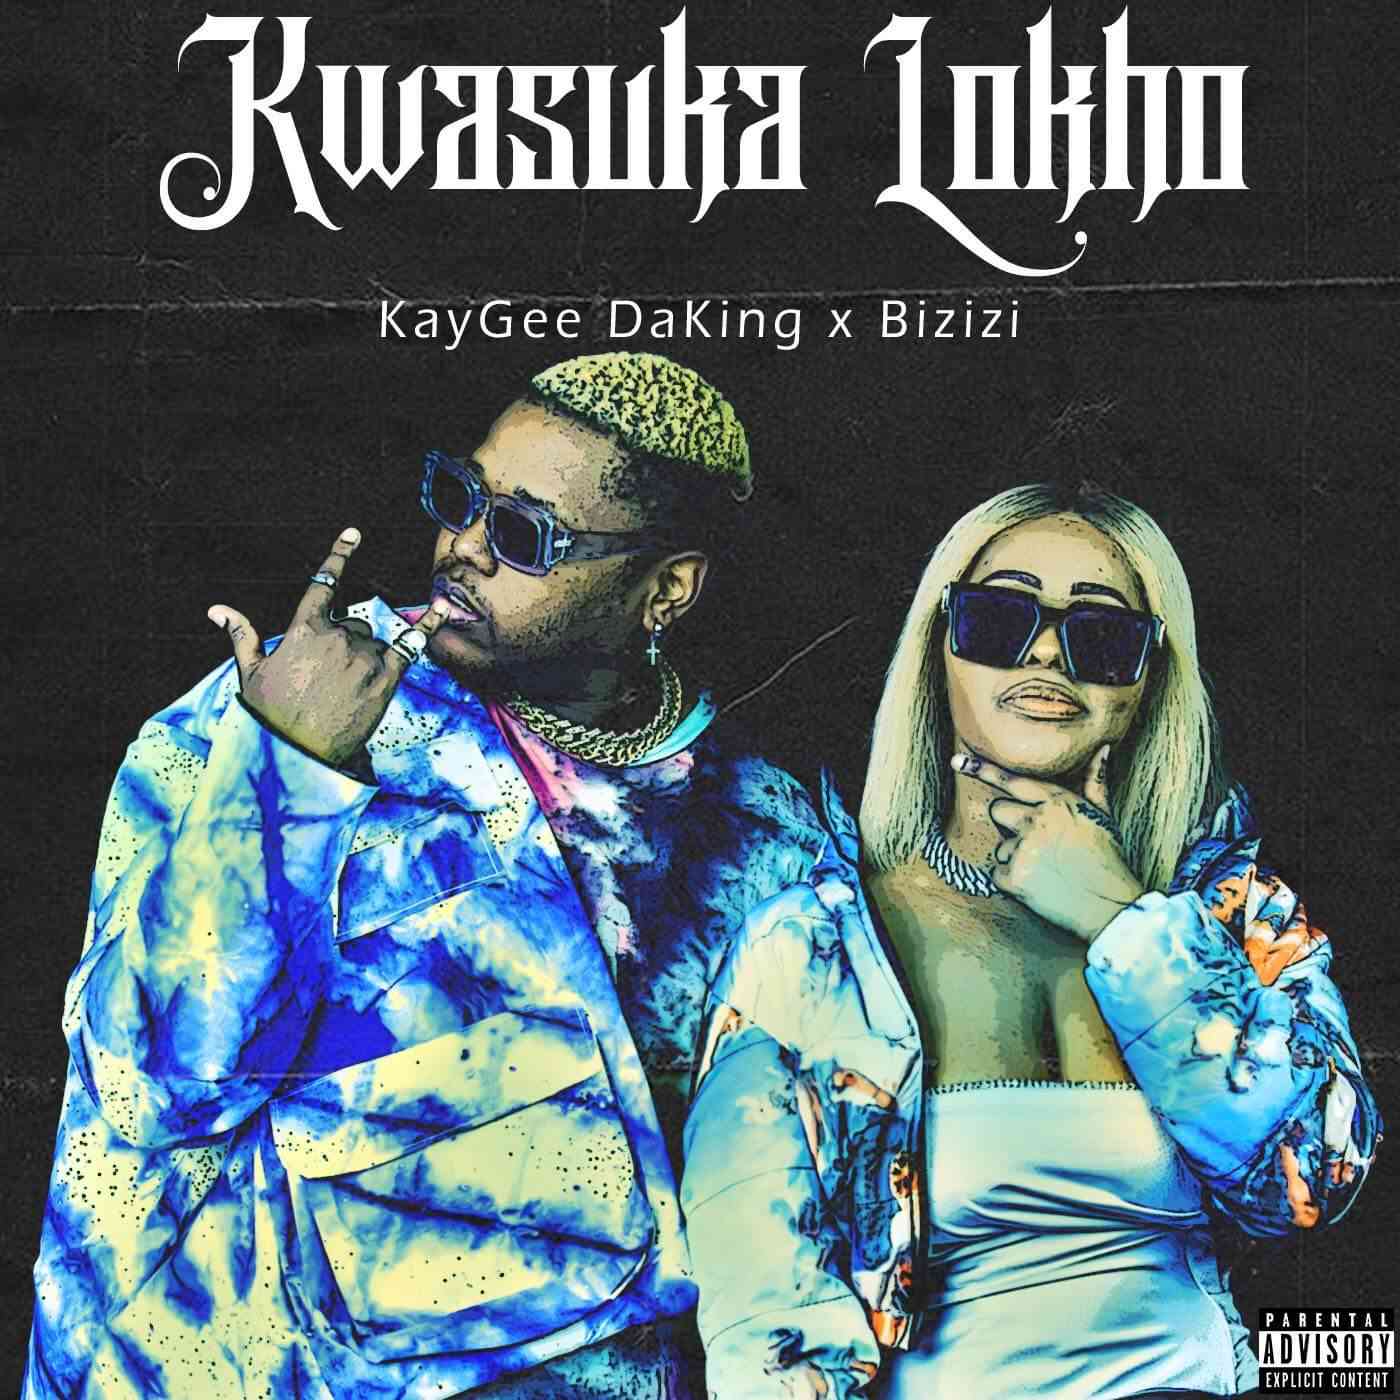 KayGee DaKing & Bizizi - Kwasuka Lokho EP